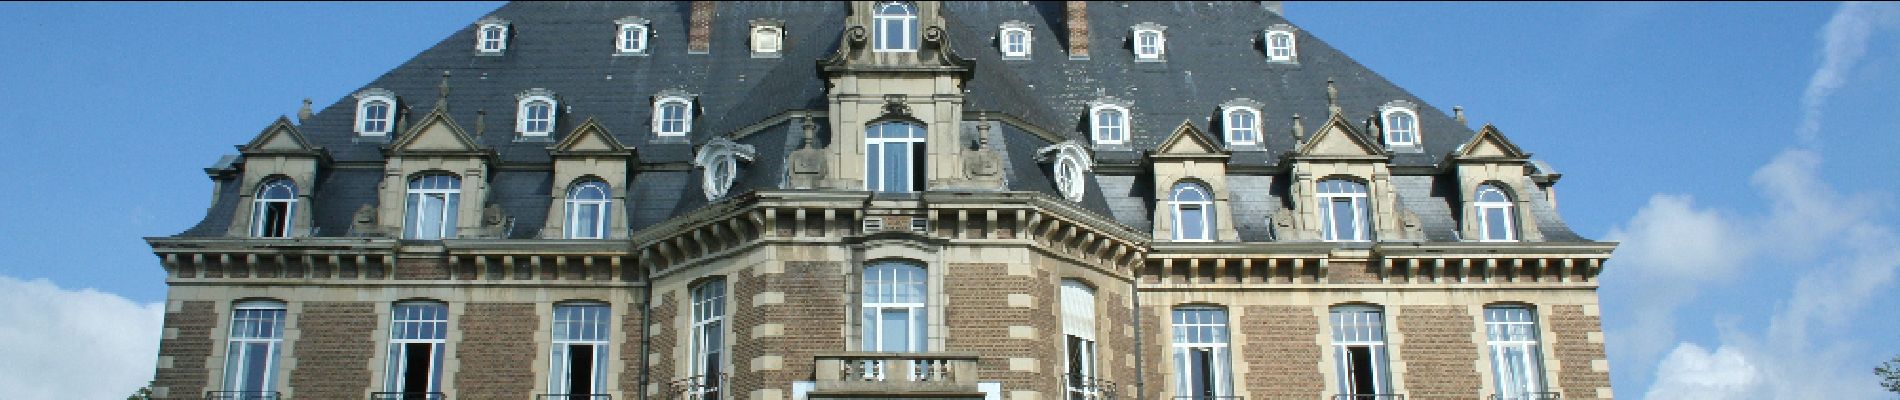 Point d'intérêt Namur - Le château de Namur - Photo